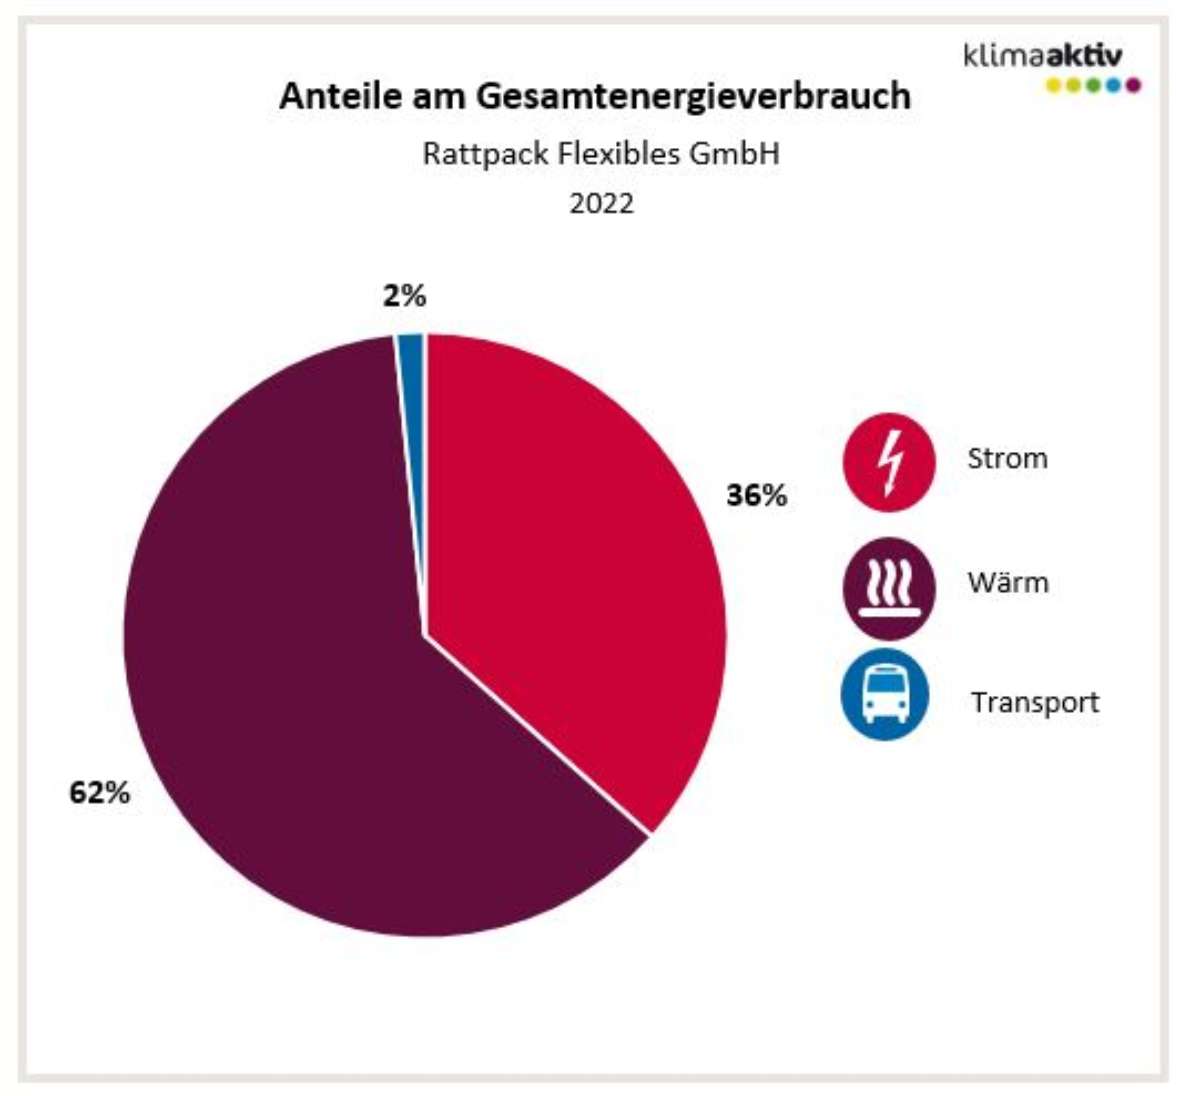 Anteile am Gesamtenergieverbrauch (Stand 2022, Rattpack) Strom 36 %, Wärme 62 % und Transport 2 %